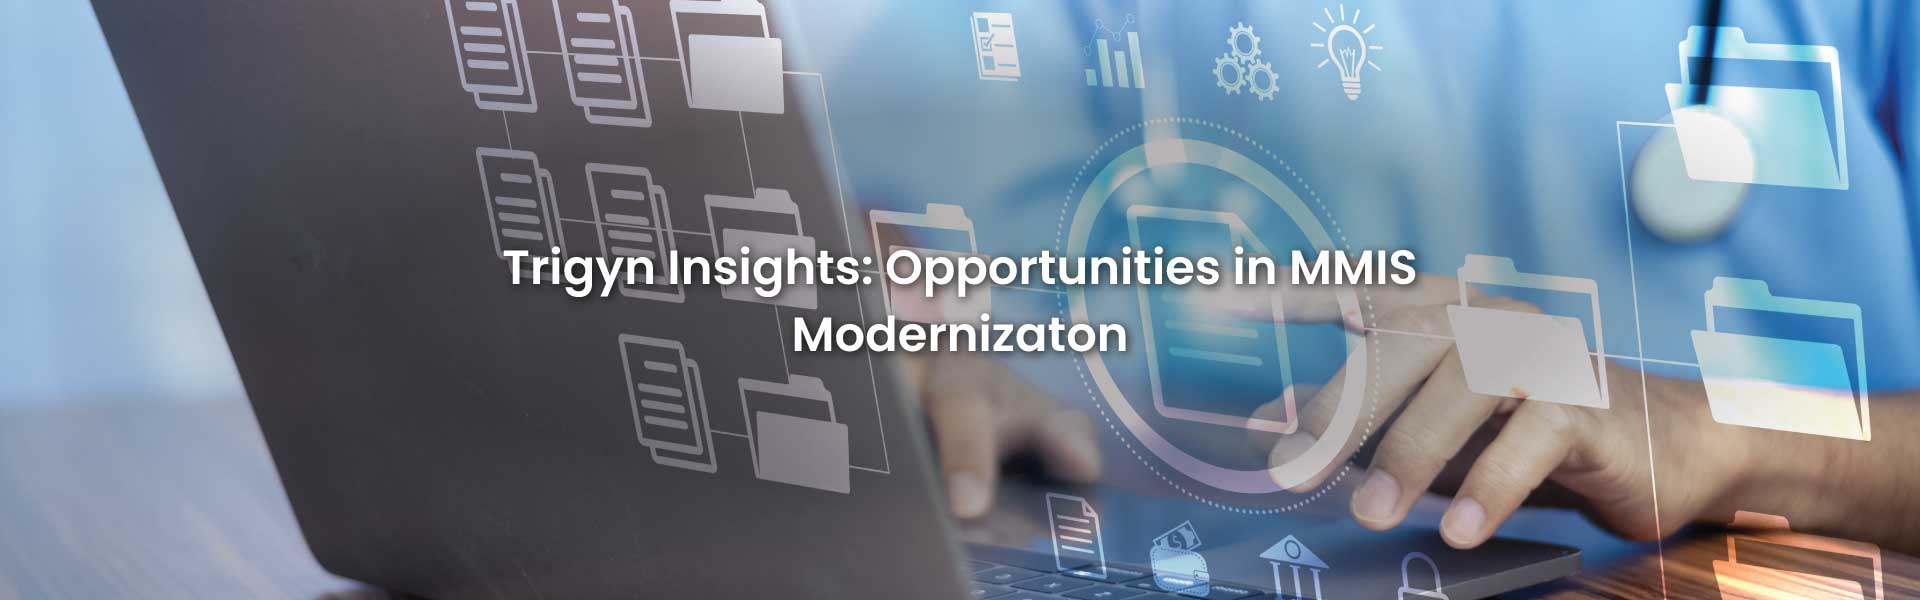 Opportunities in MMIS Modernization